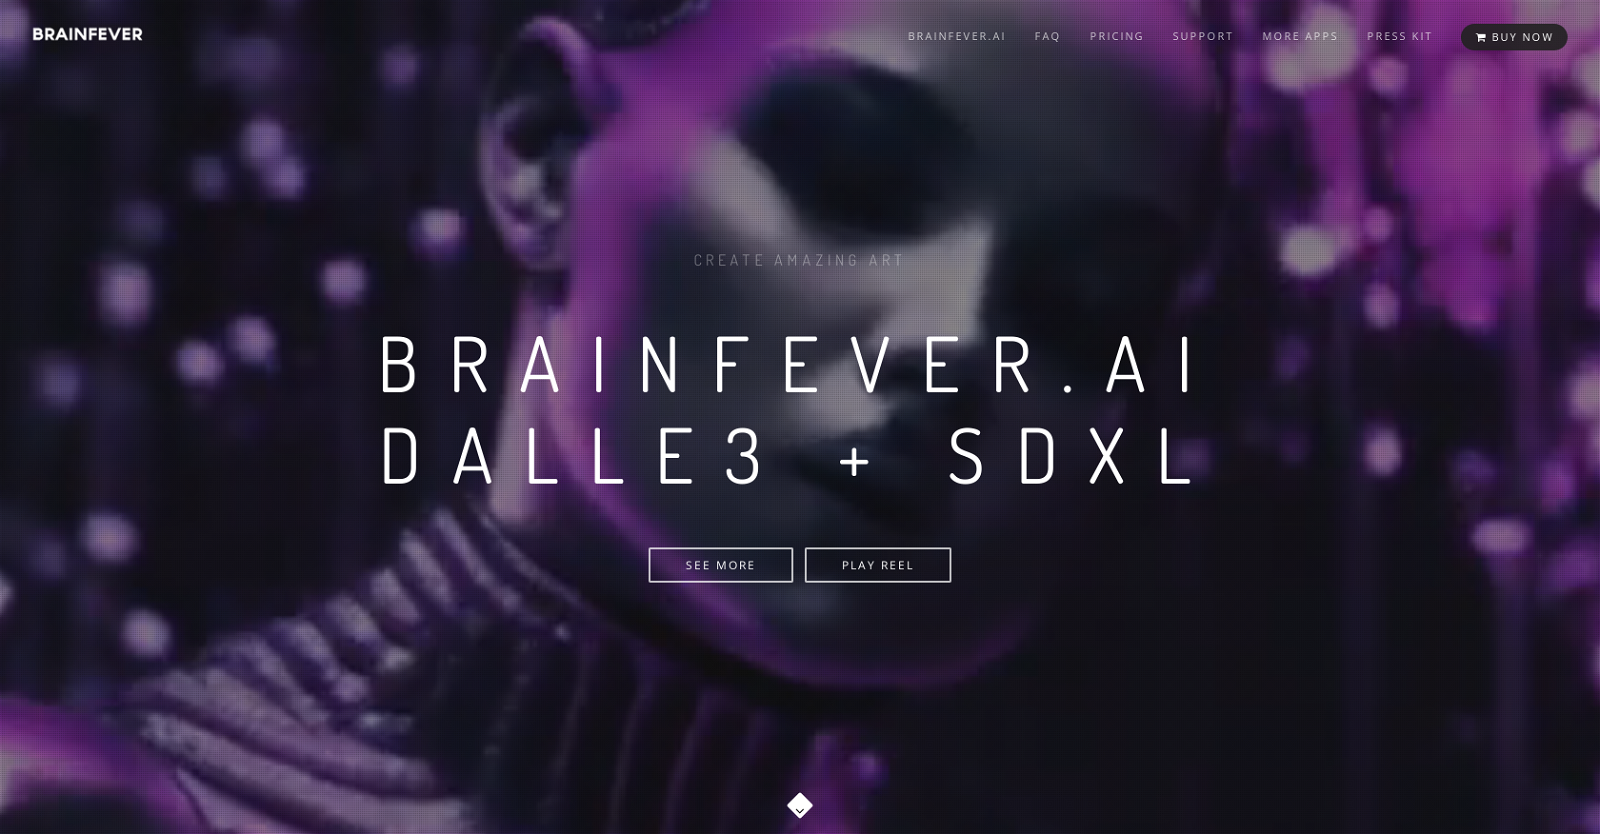 BrainFever website